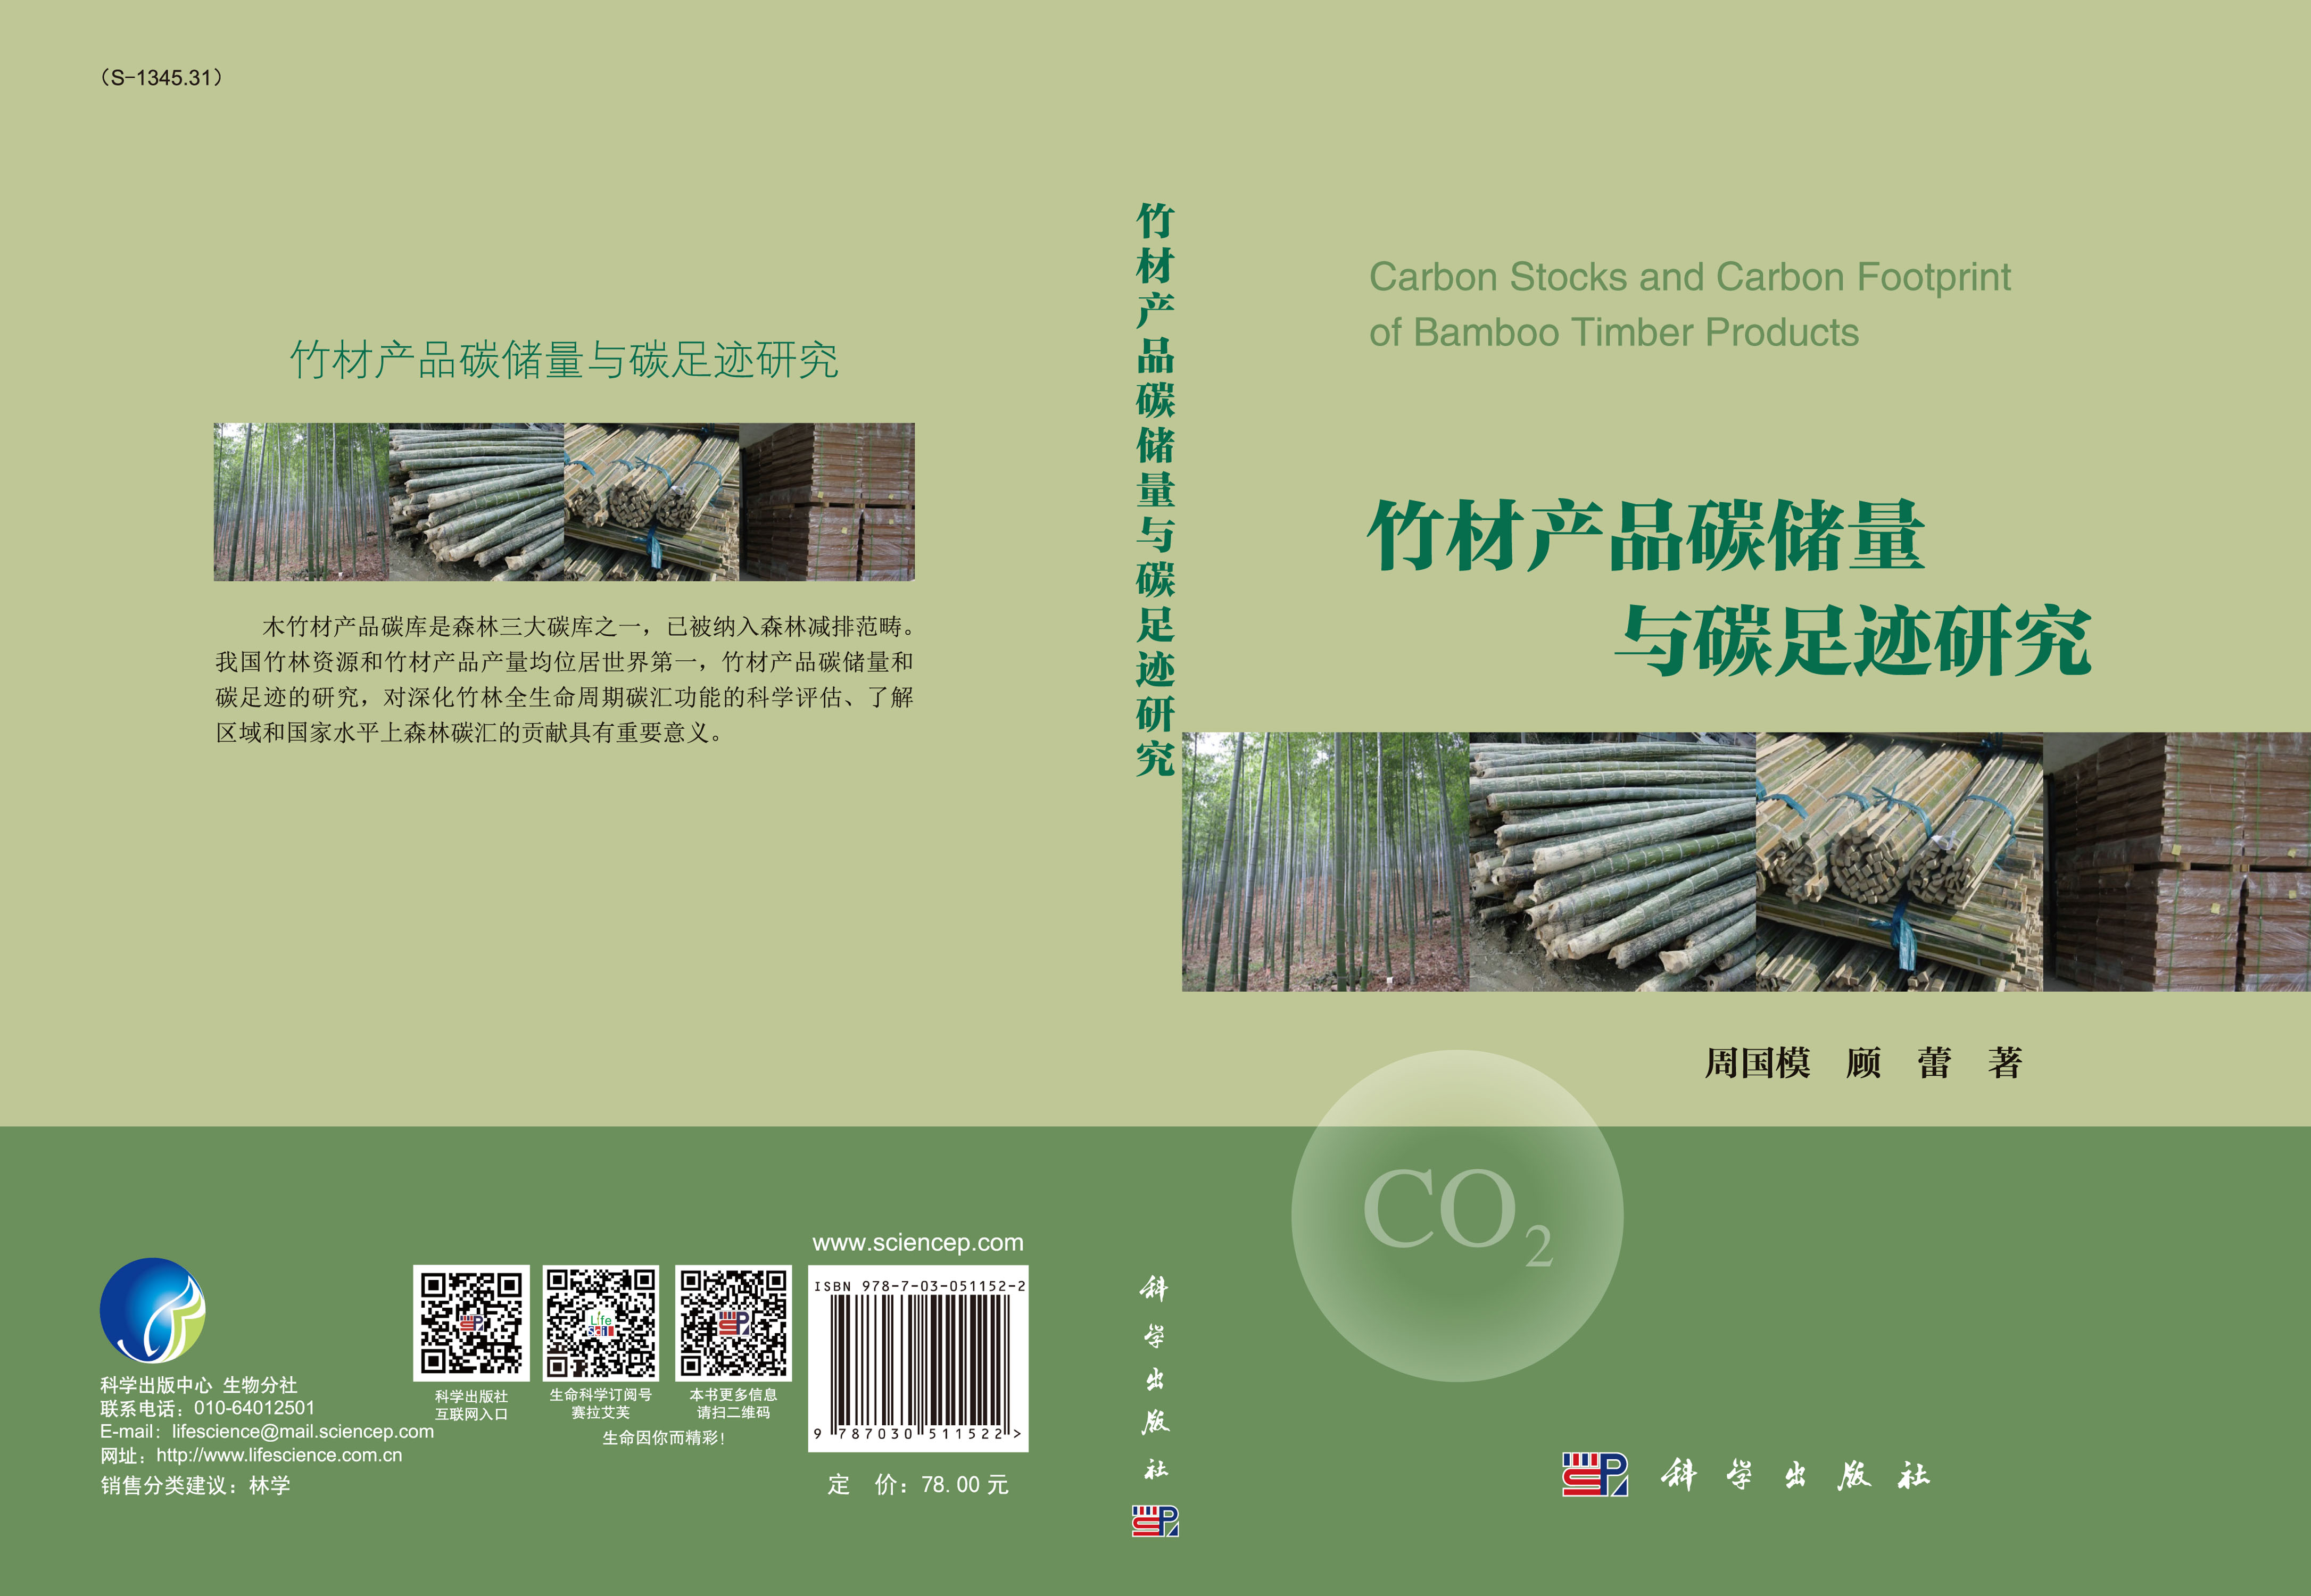 竹材产品碳储量与碳足迹研究